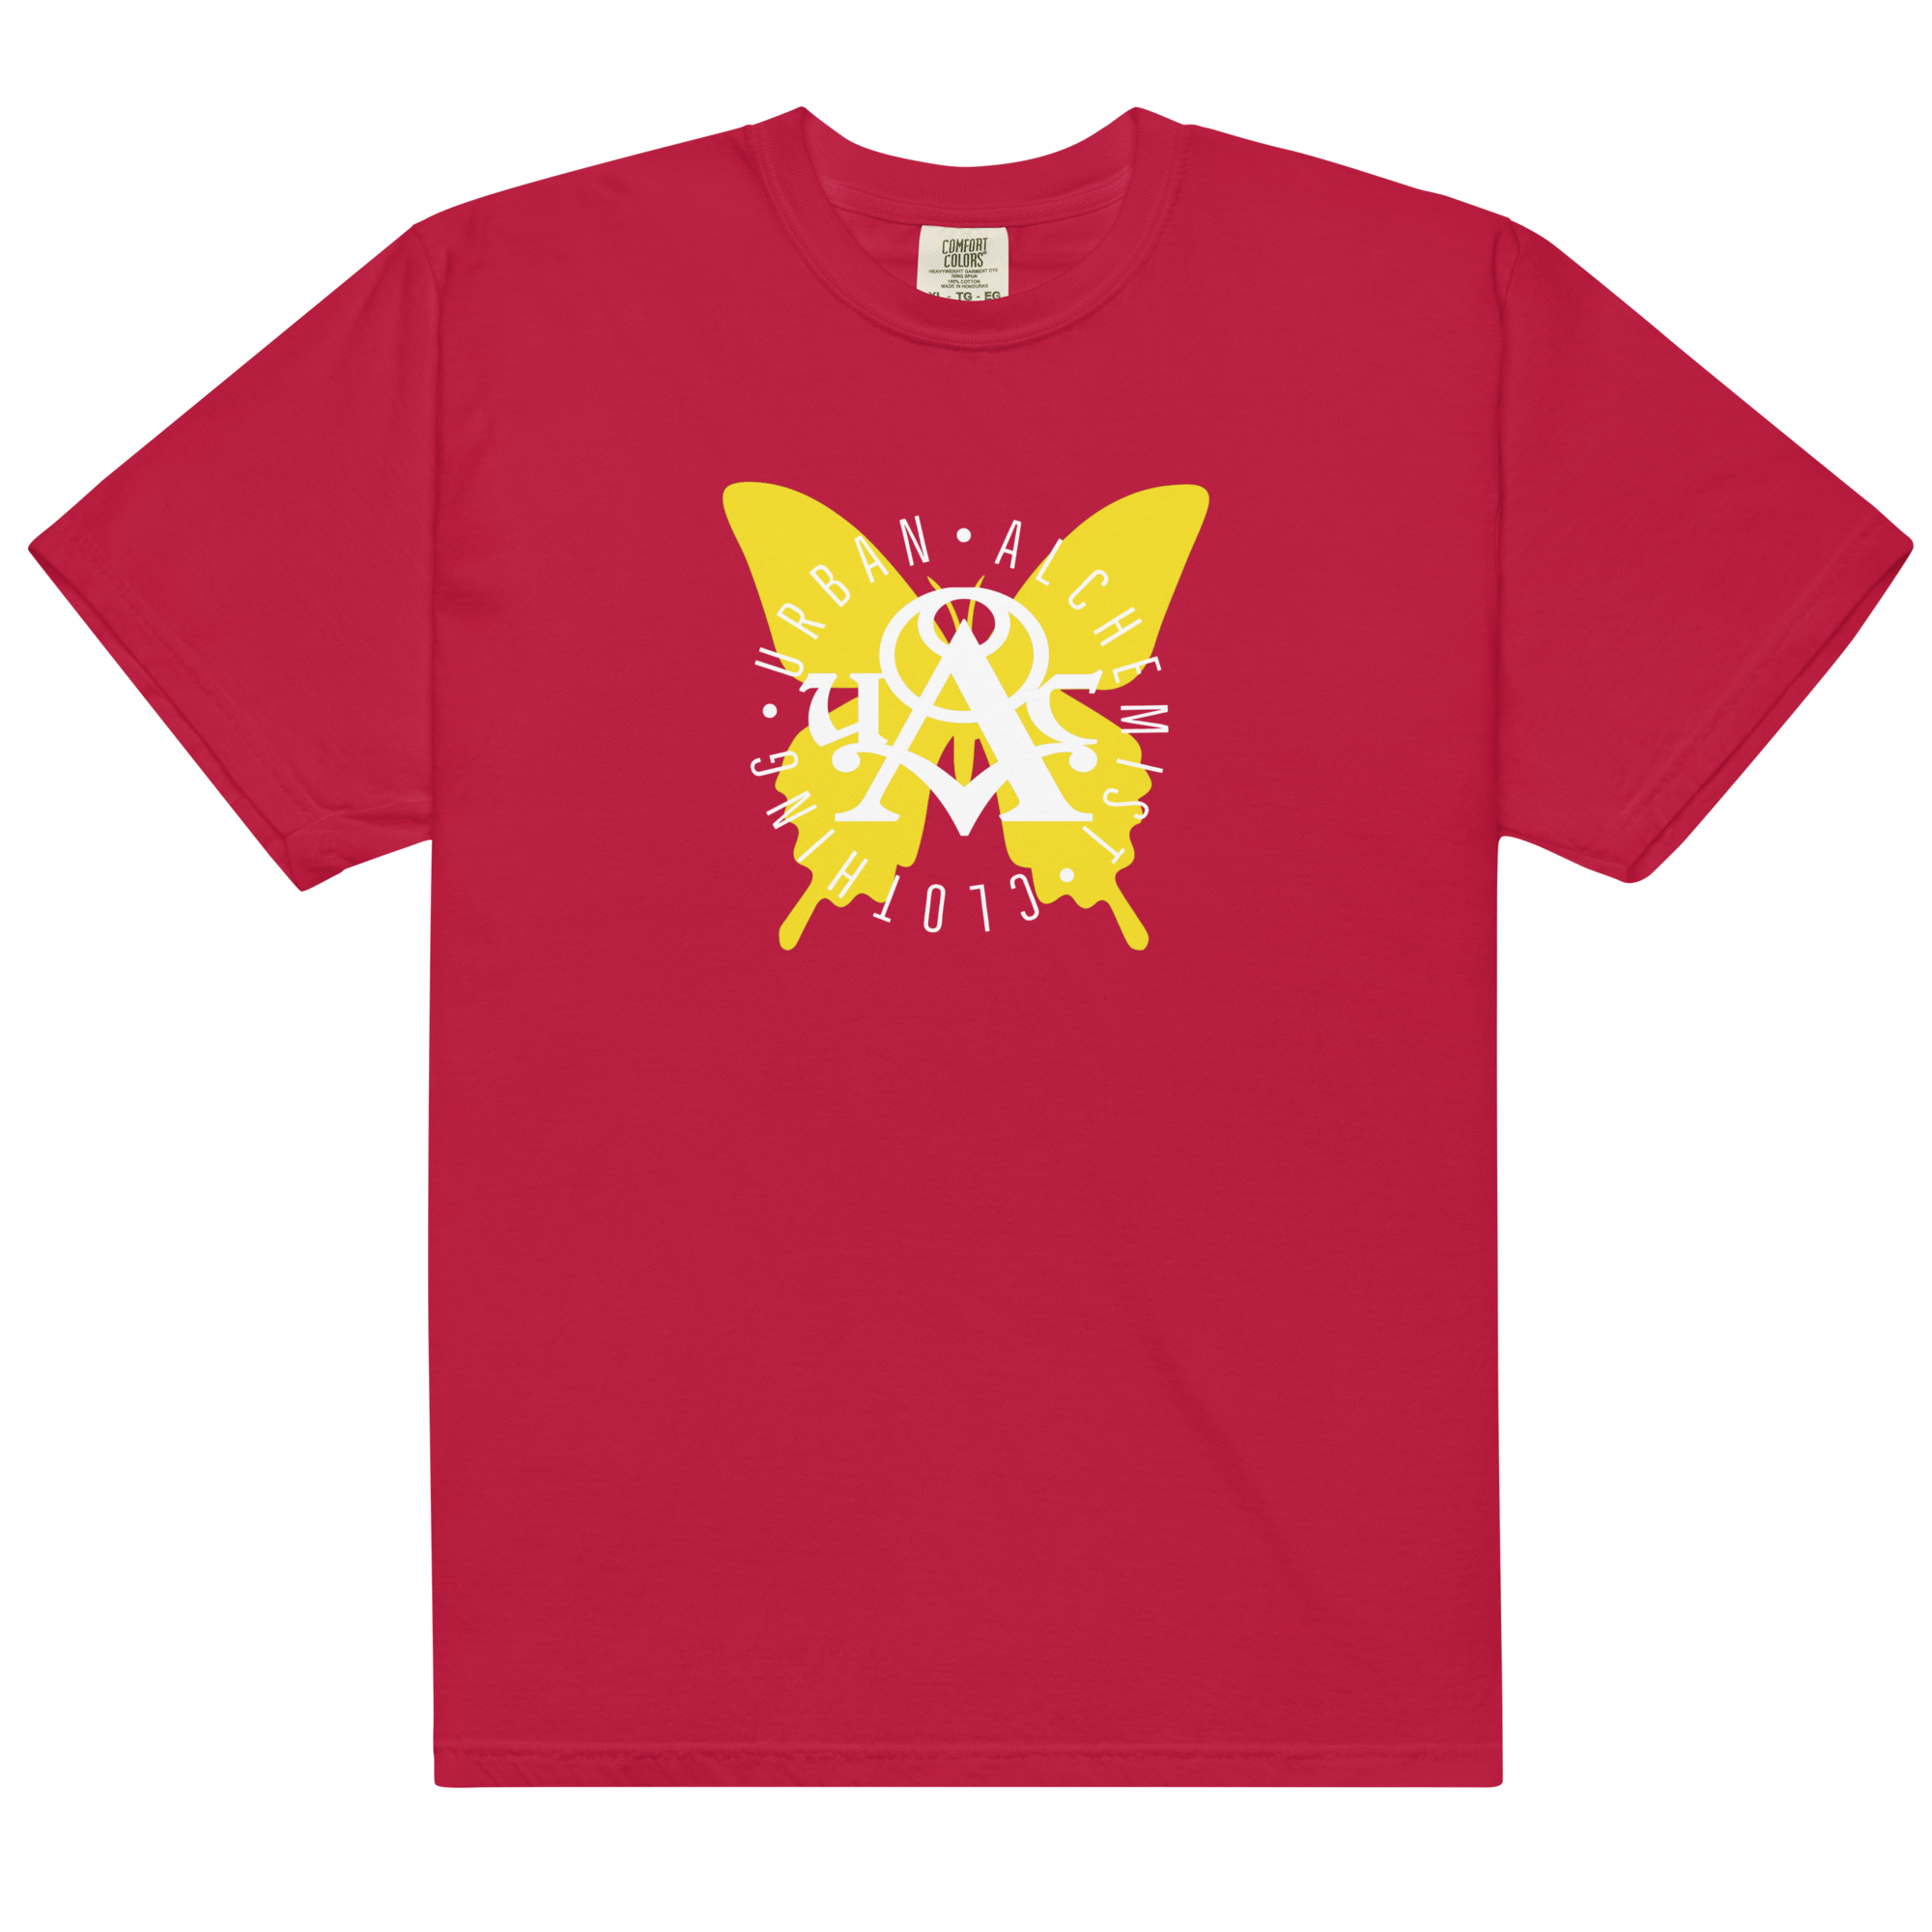 Butterfly Effect - Men’s garment-dyed heavyweight t-shirt